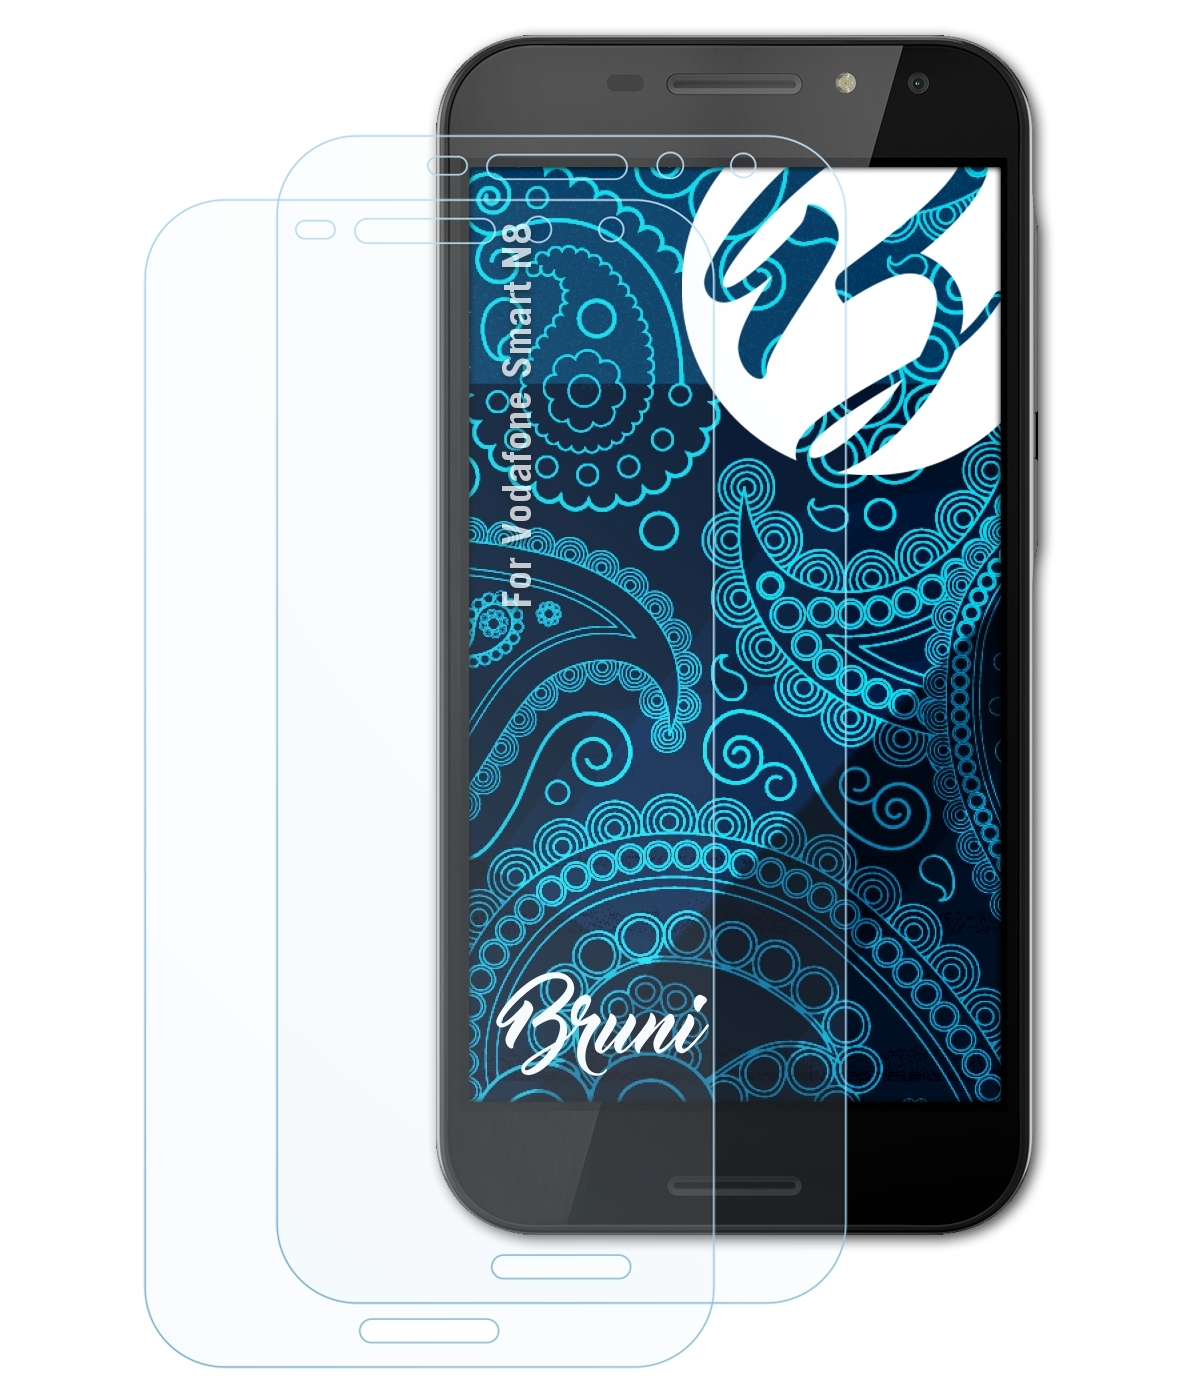 BRUNI Basics-Clear N8) 2x Smart Schutzfolie(für Vodafone